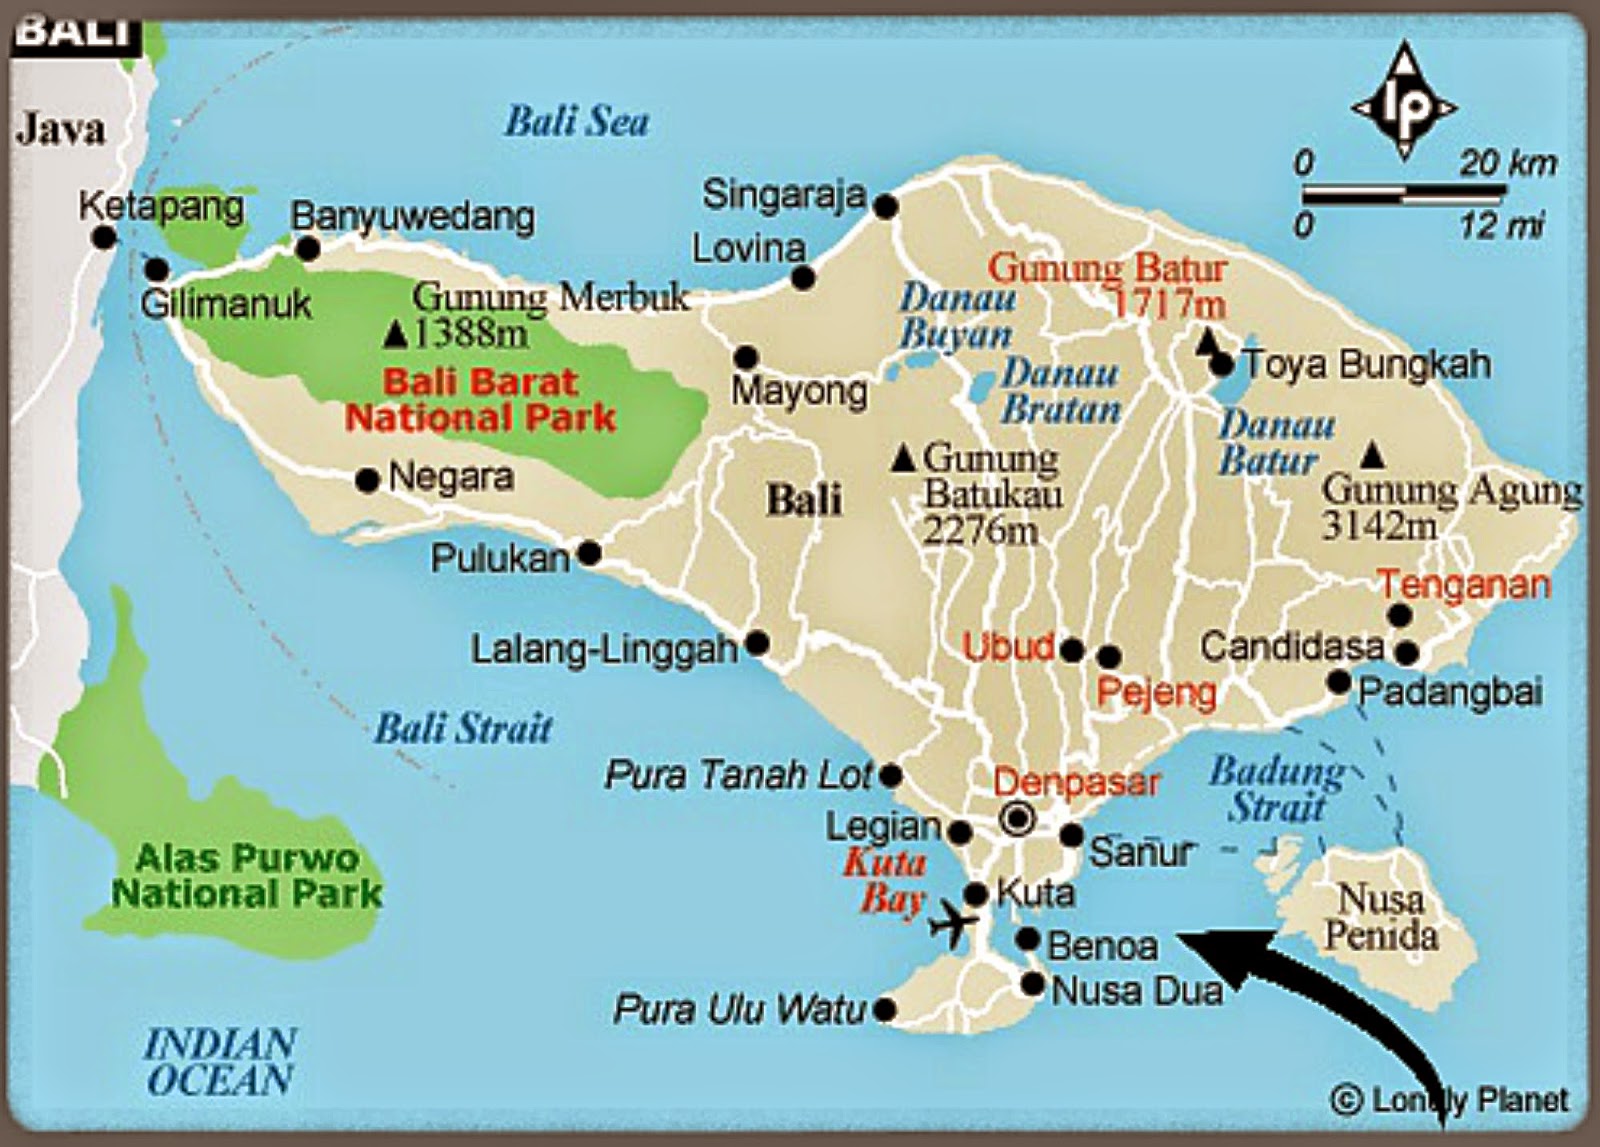 Подробная карта бали